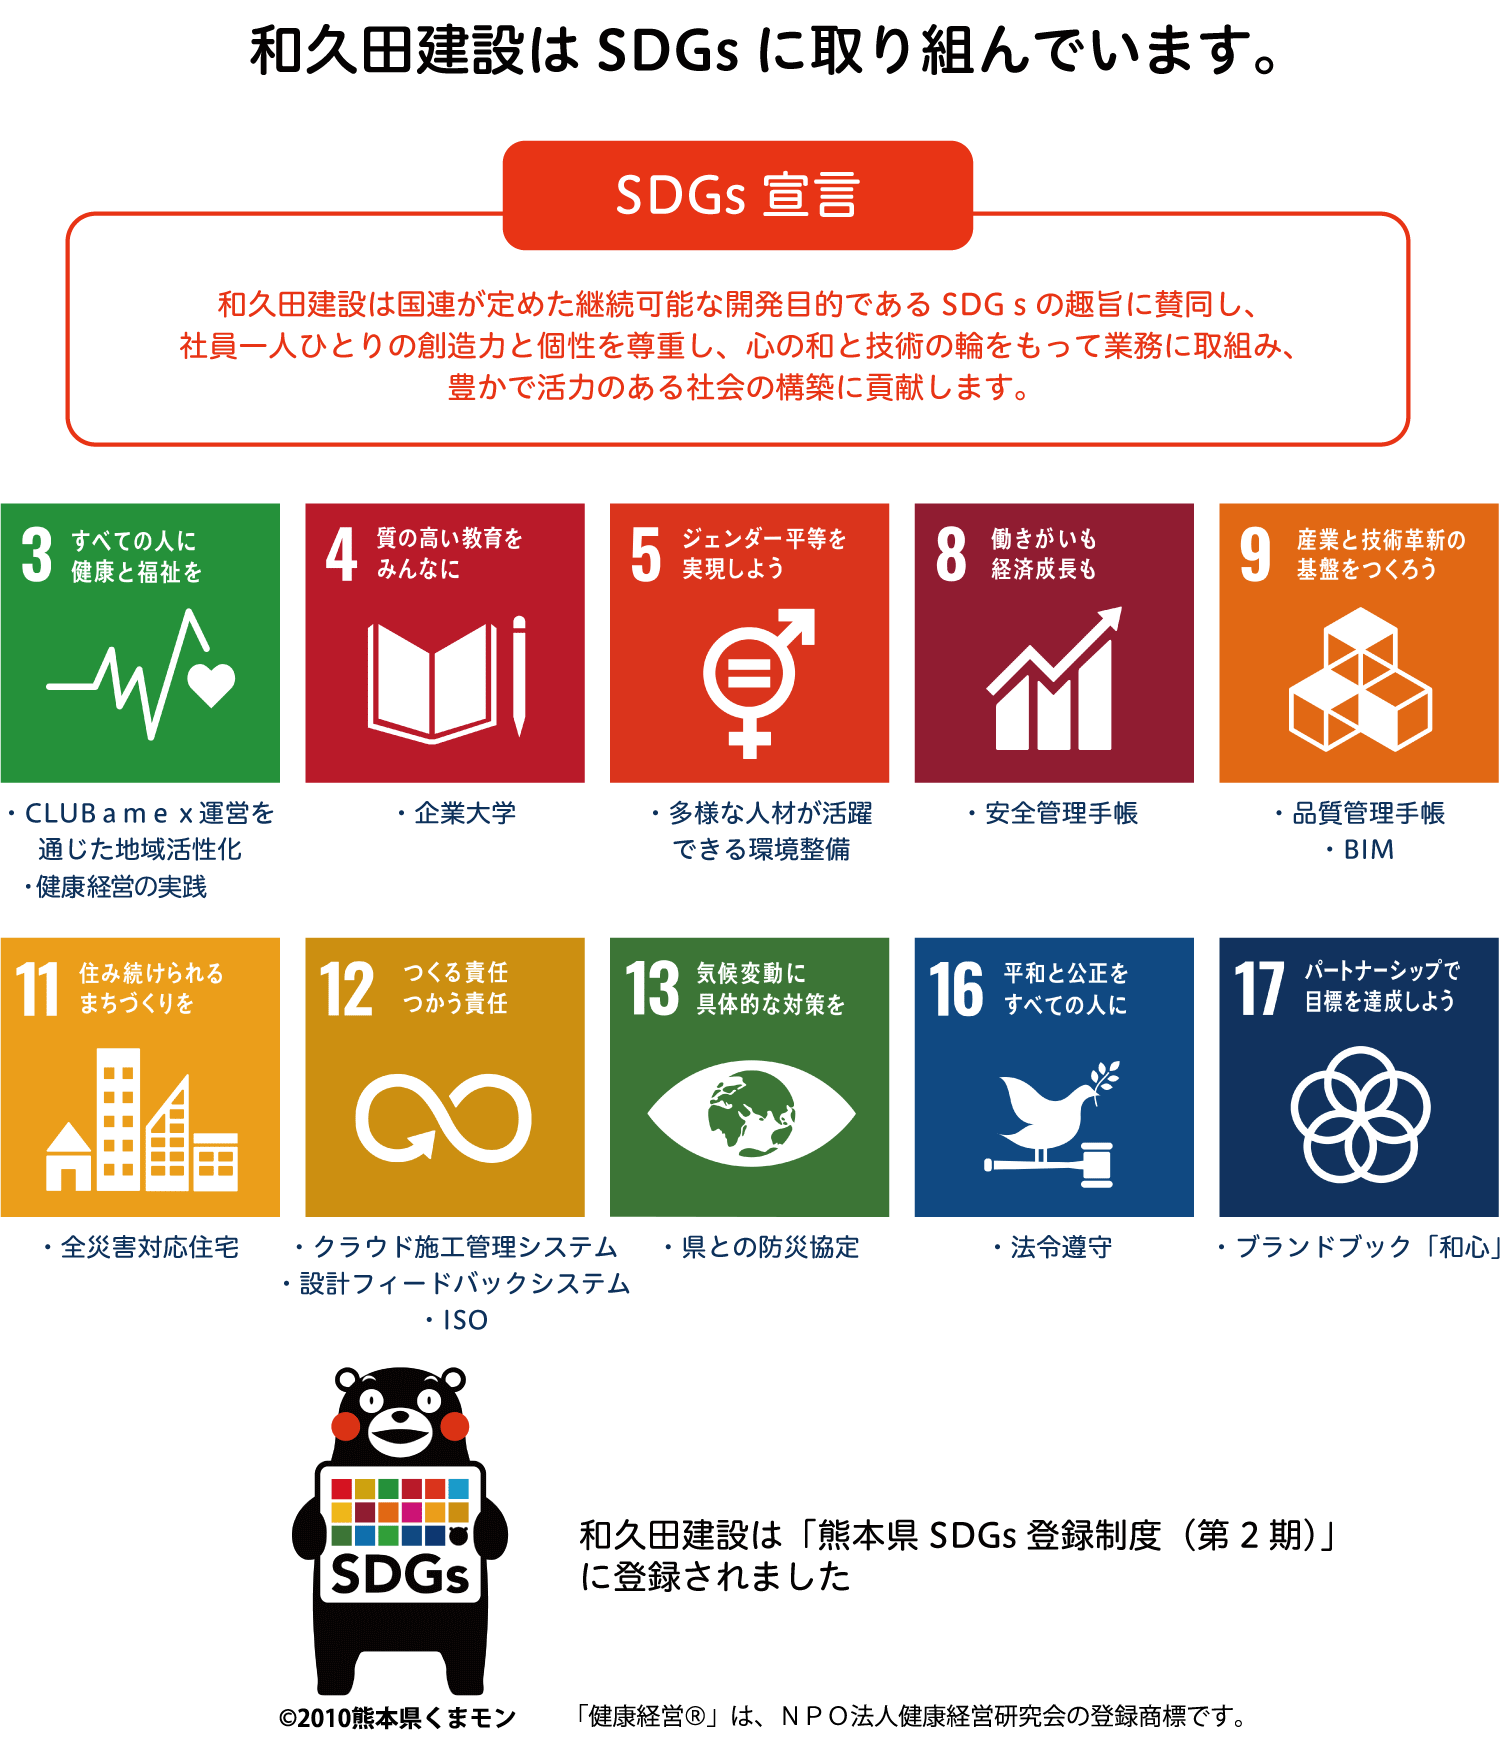 和久田建設SDGsへの取組み